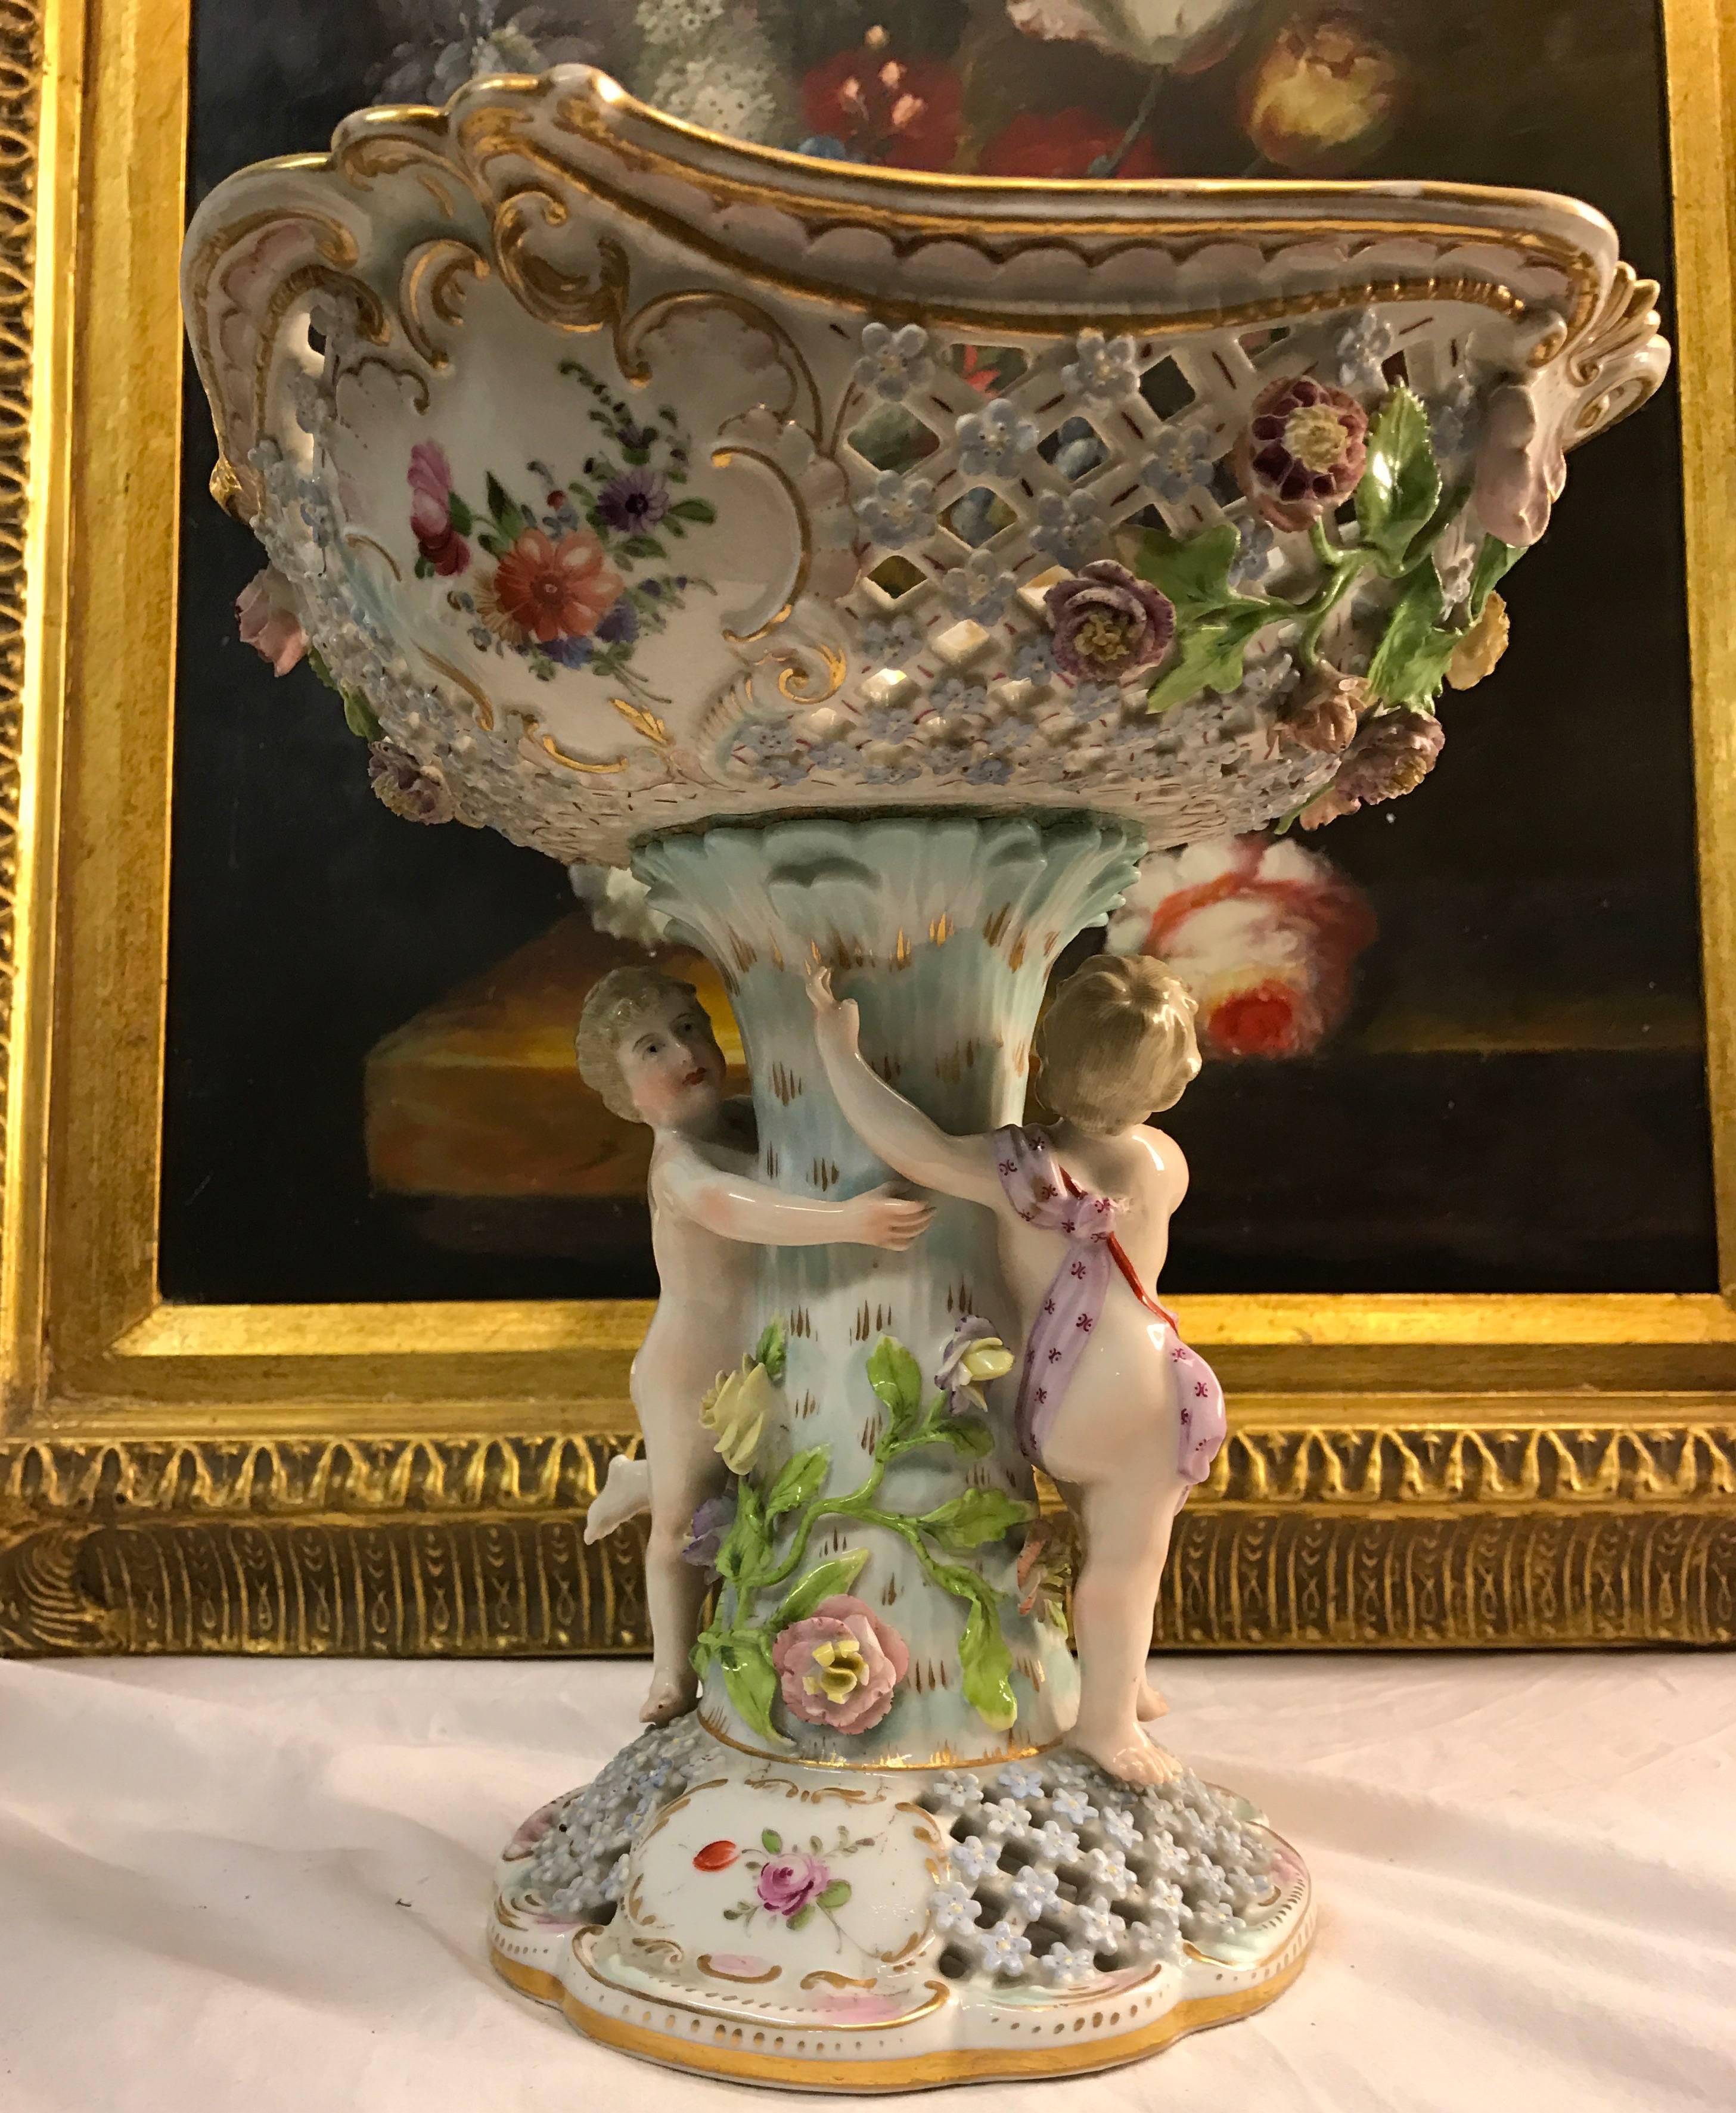 19th Century Baroque Porcelain Centerpiece, Bowl by Carl Thieme at Potschappel For Sale 1